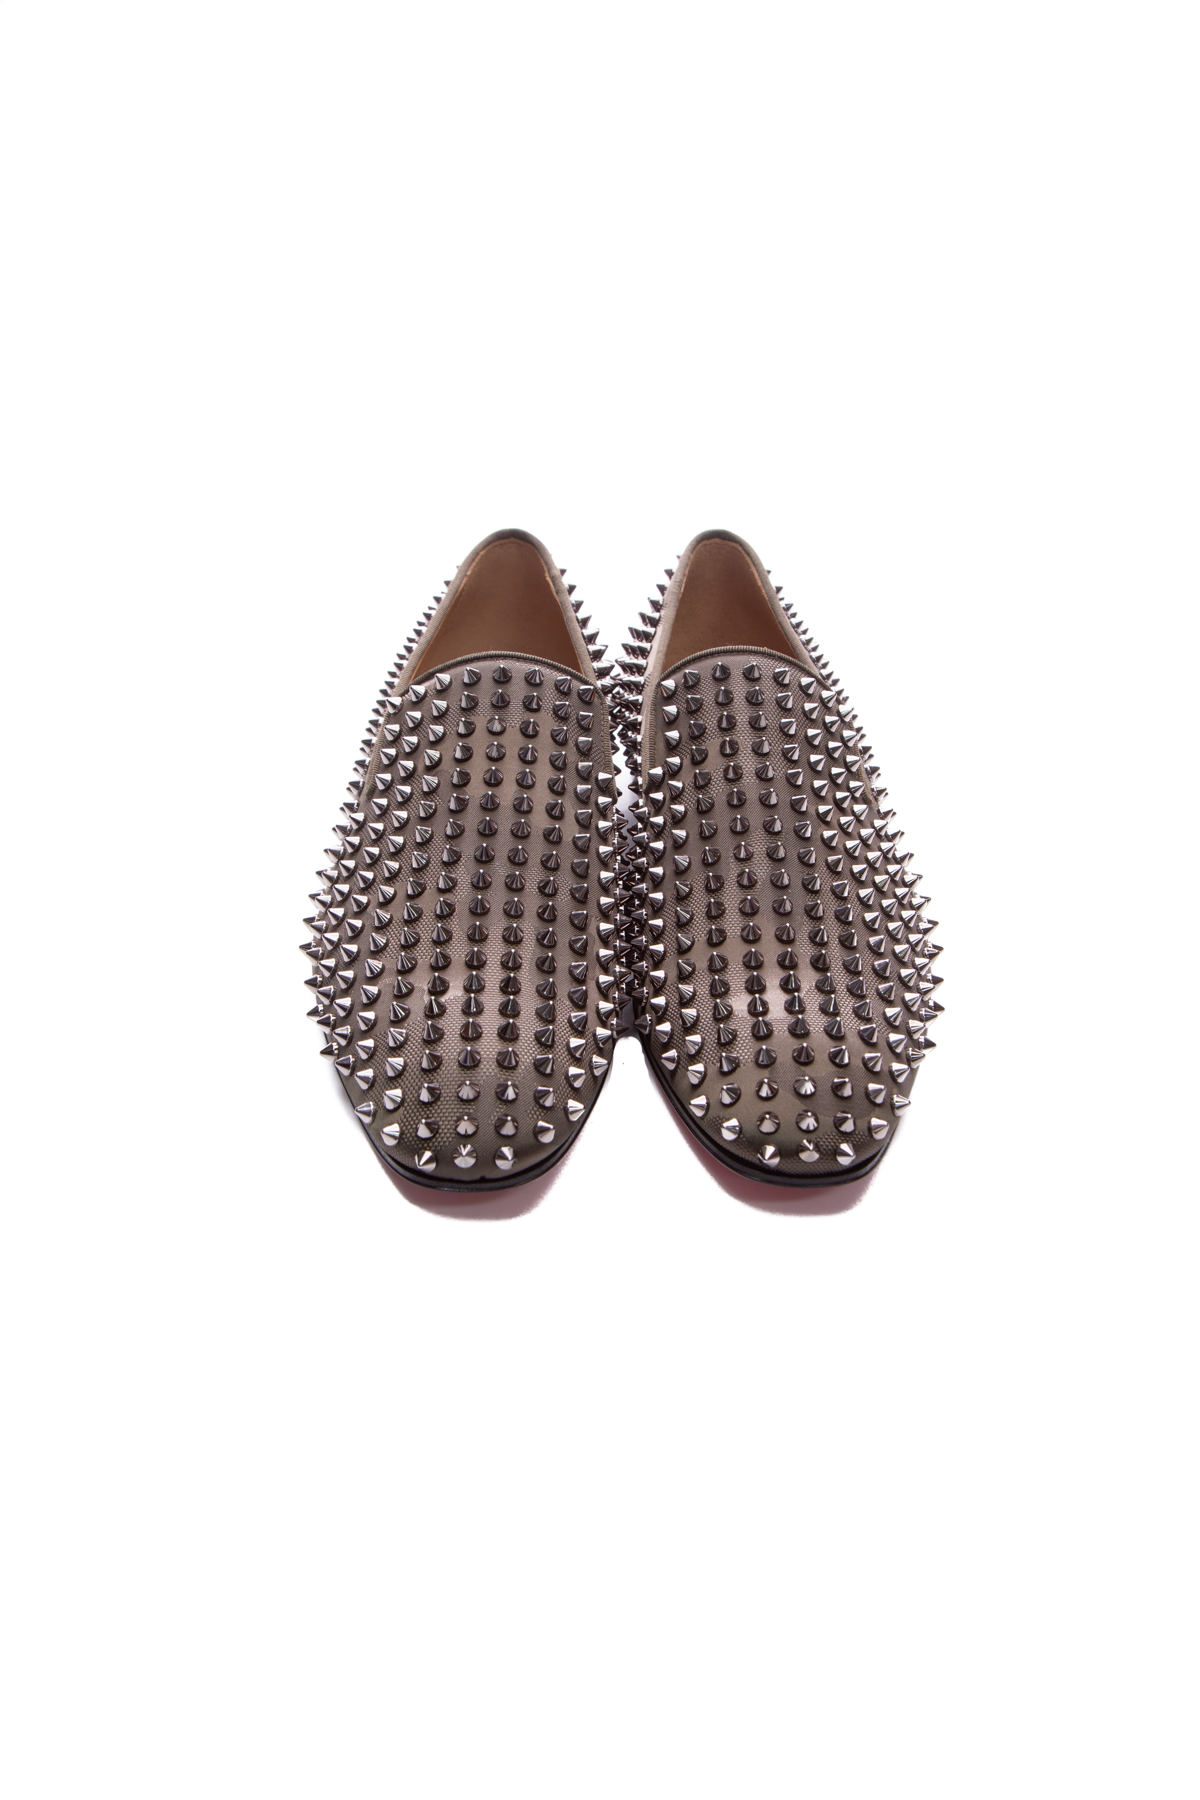 Christian Louboutin Men's Dandelion Spike Loafers - Size 11 